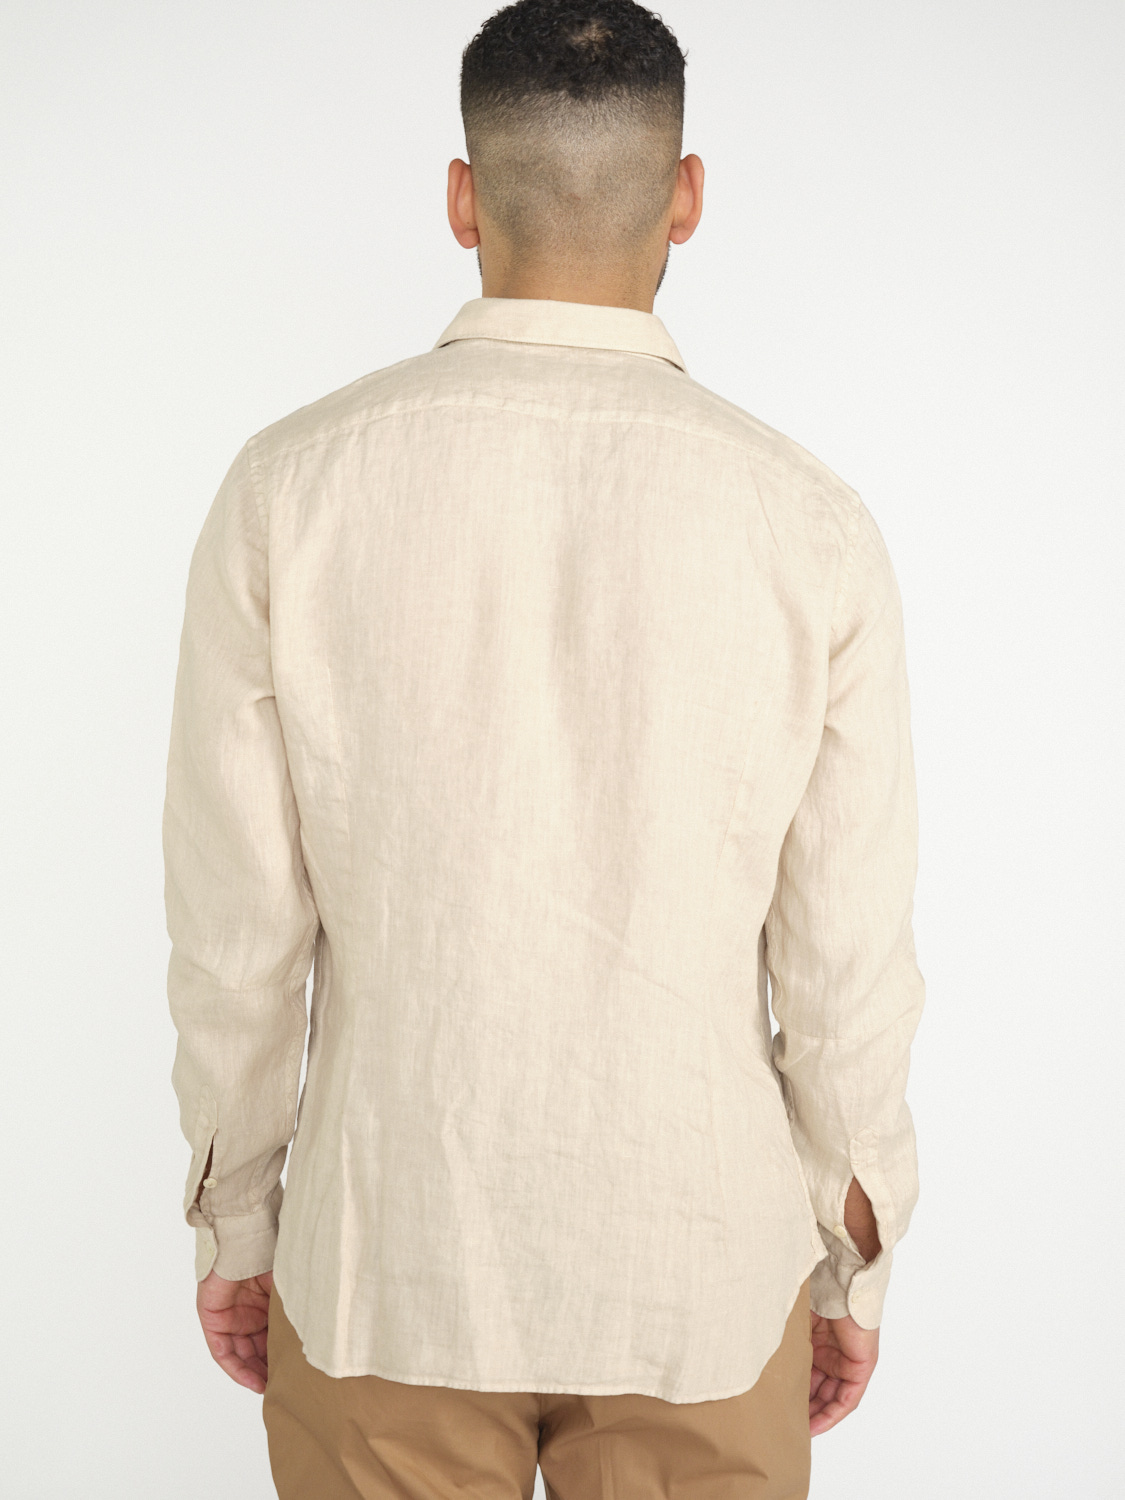 Tintoria Mattei 954 Camicia di lino  beige XL